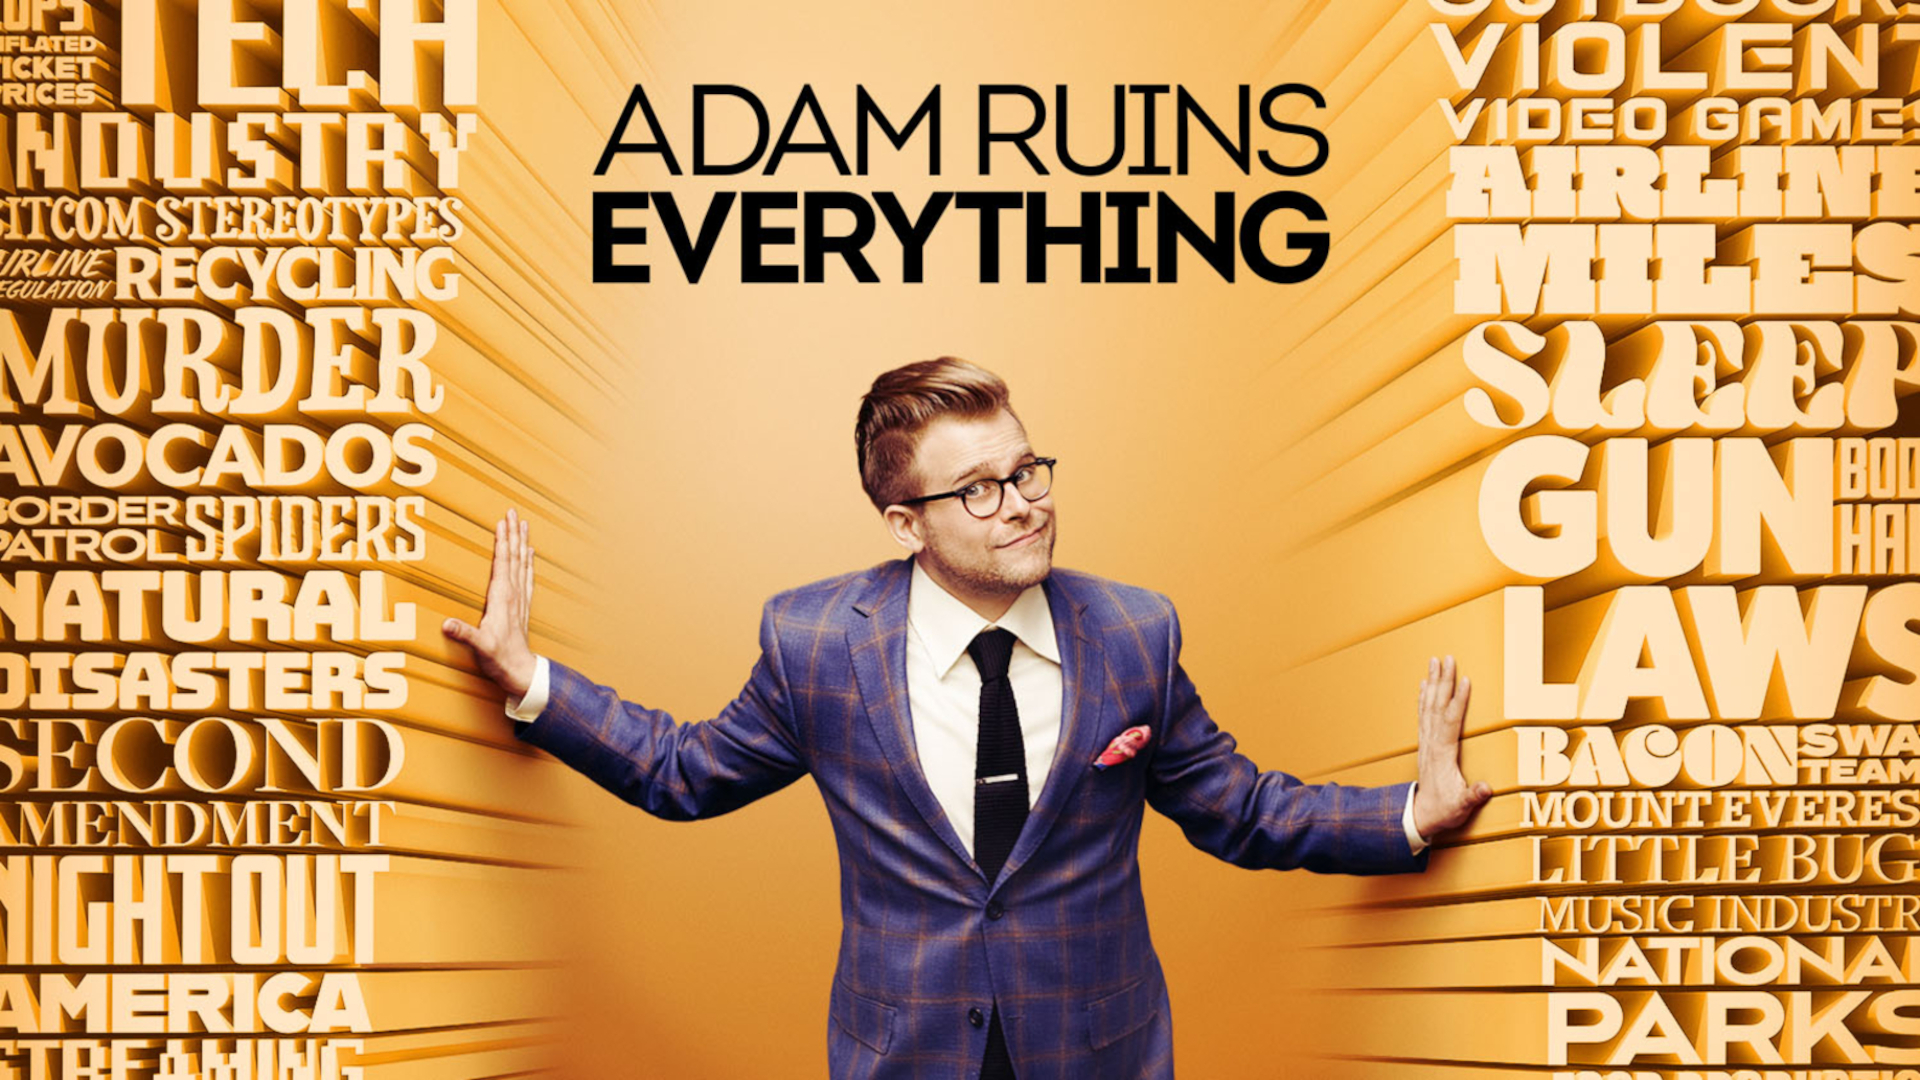 Everything's ruined. Adam Ruins everything. Adam Ruins everything демократические выборы.